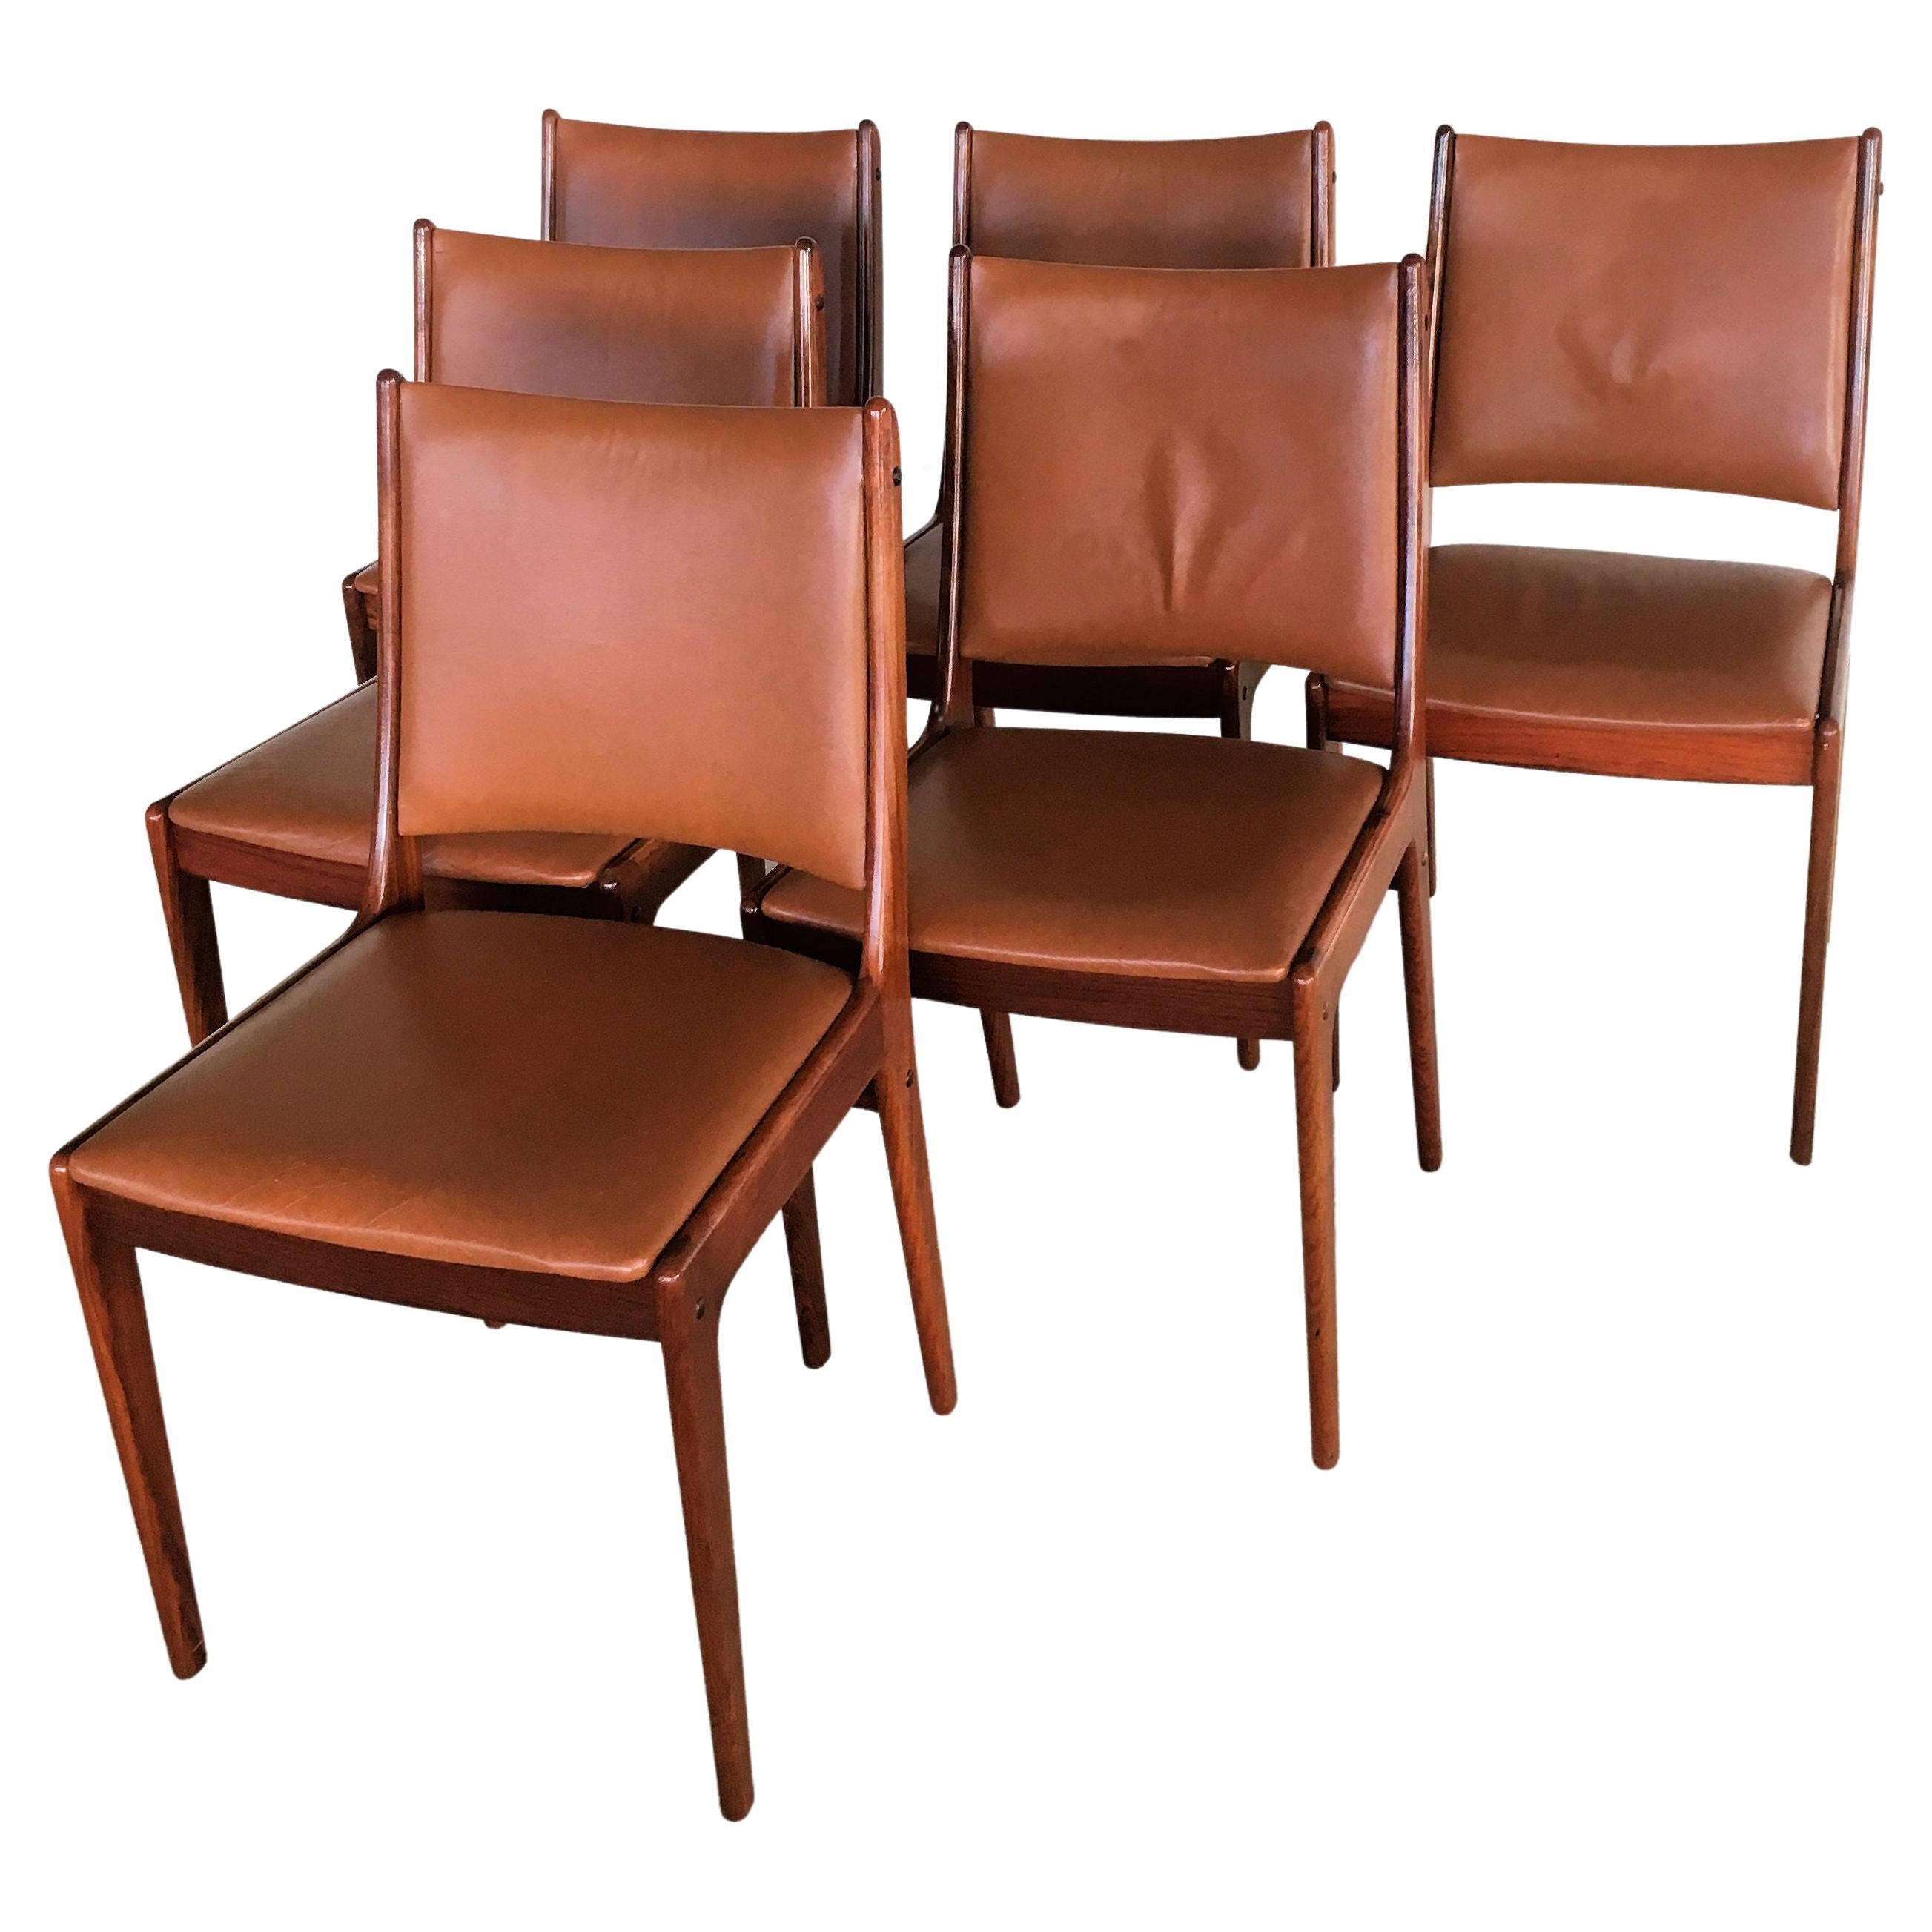 Sechs restaurierte Johannes Andersen-Esszimmerstühle aus Rosenholz, maßgefertigt gepolstert